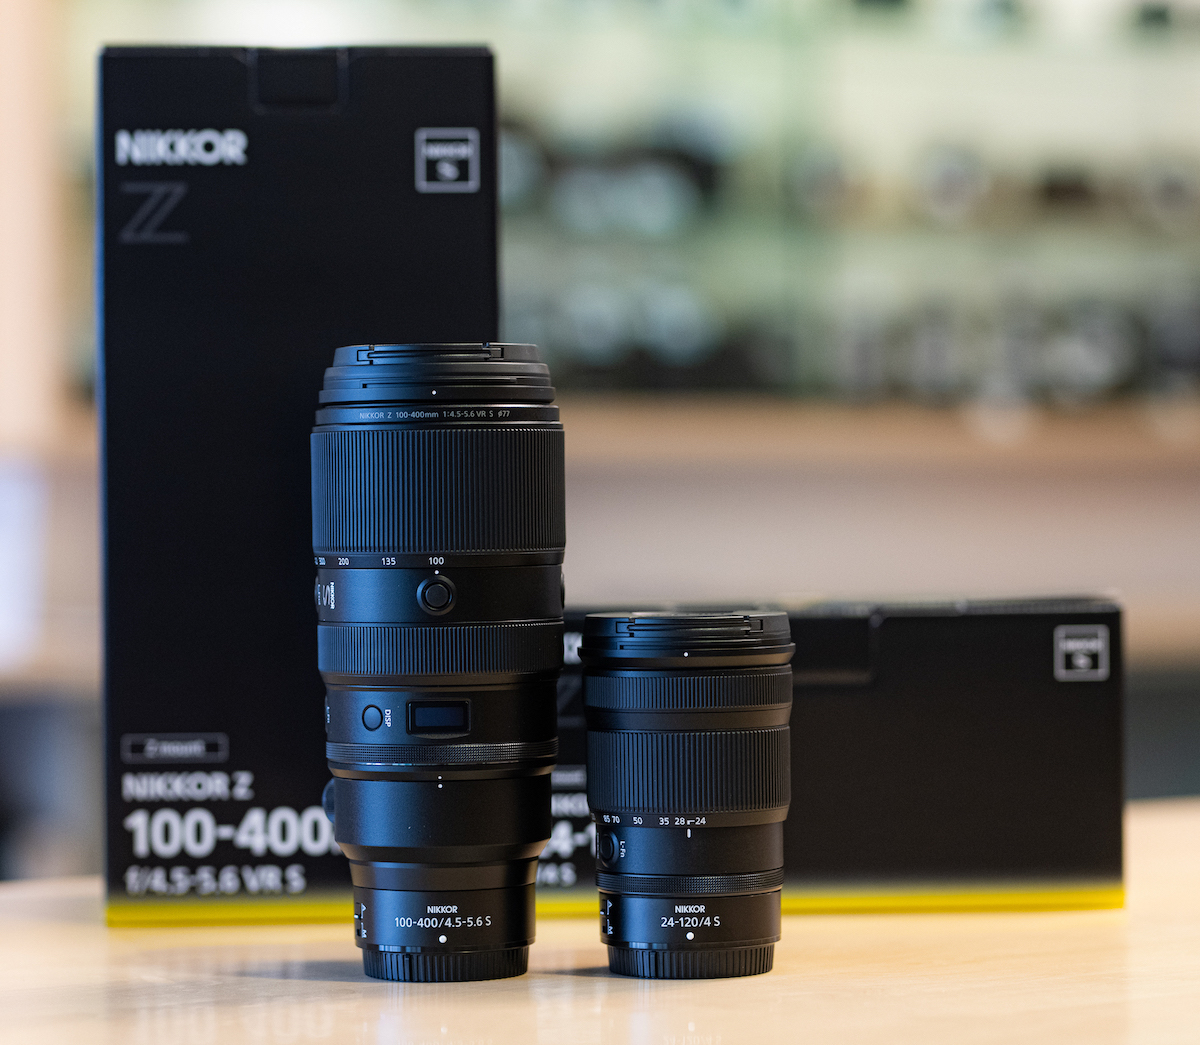 Nikon Z7 II Camera and Nikon Z 100-400mm F4.5-5.6 VR Lens